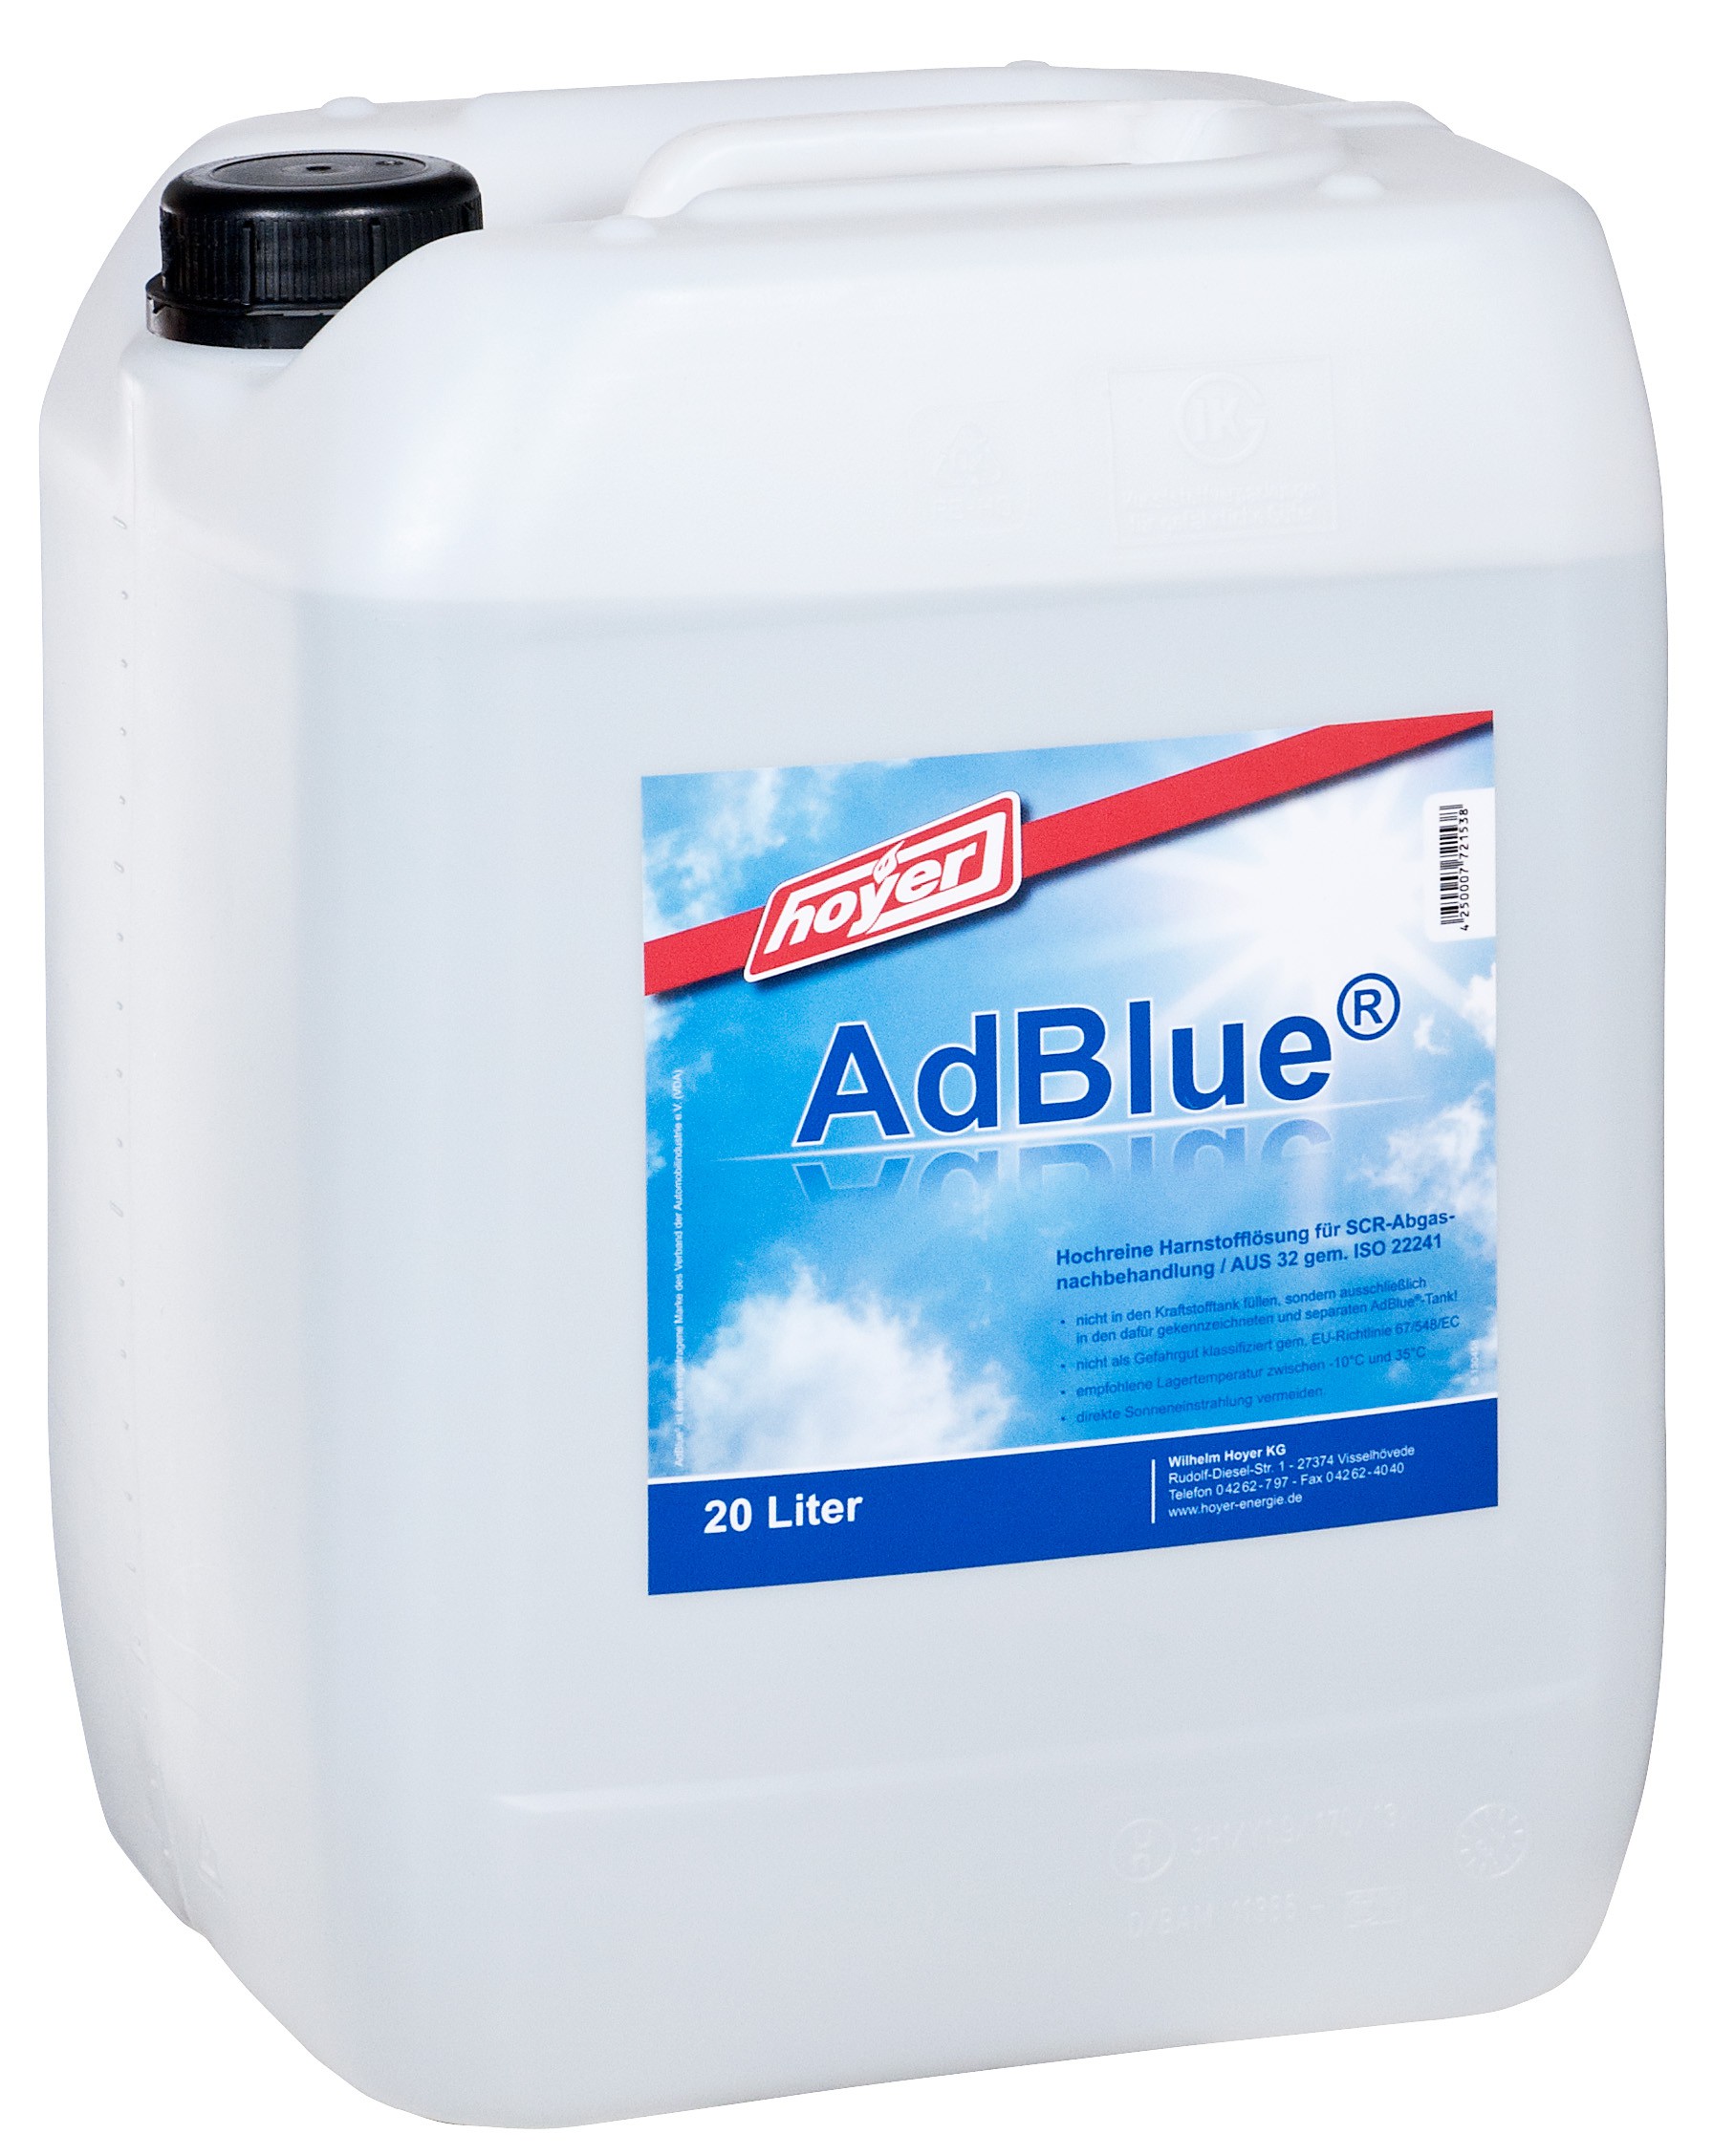 Adblue - 20 Liter Kanne preisgünstig erhältlich